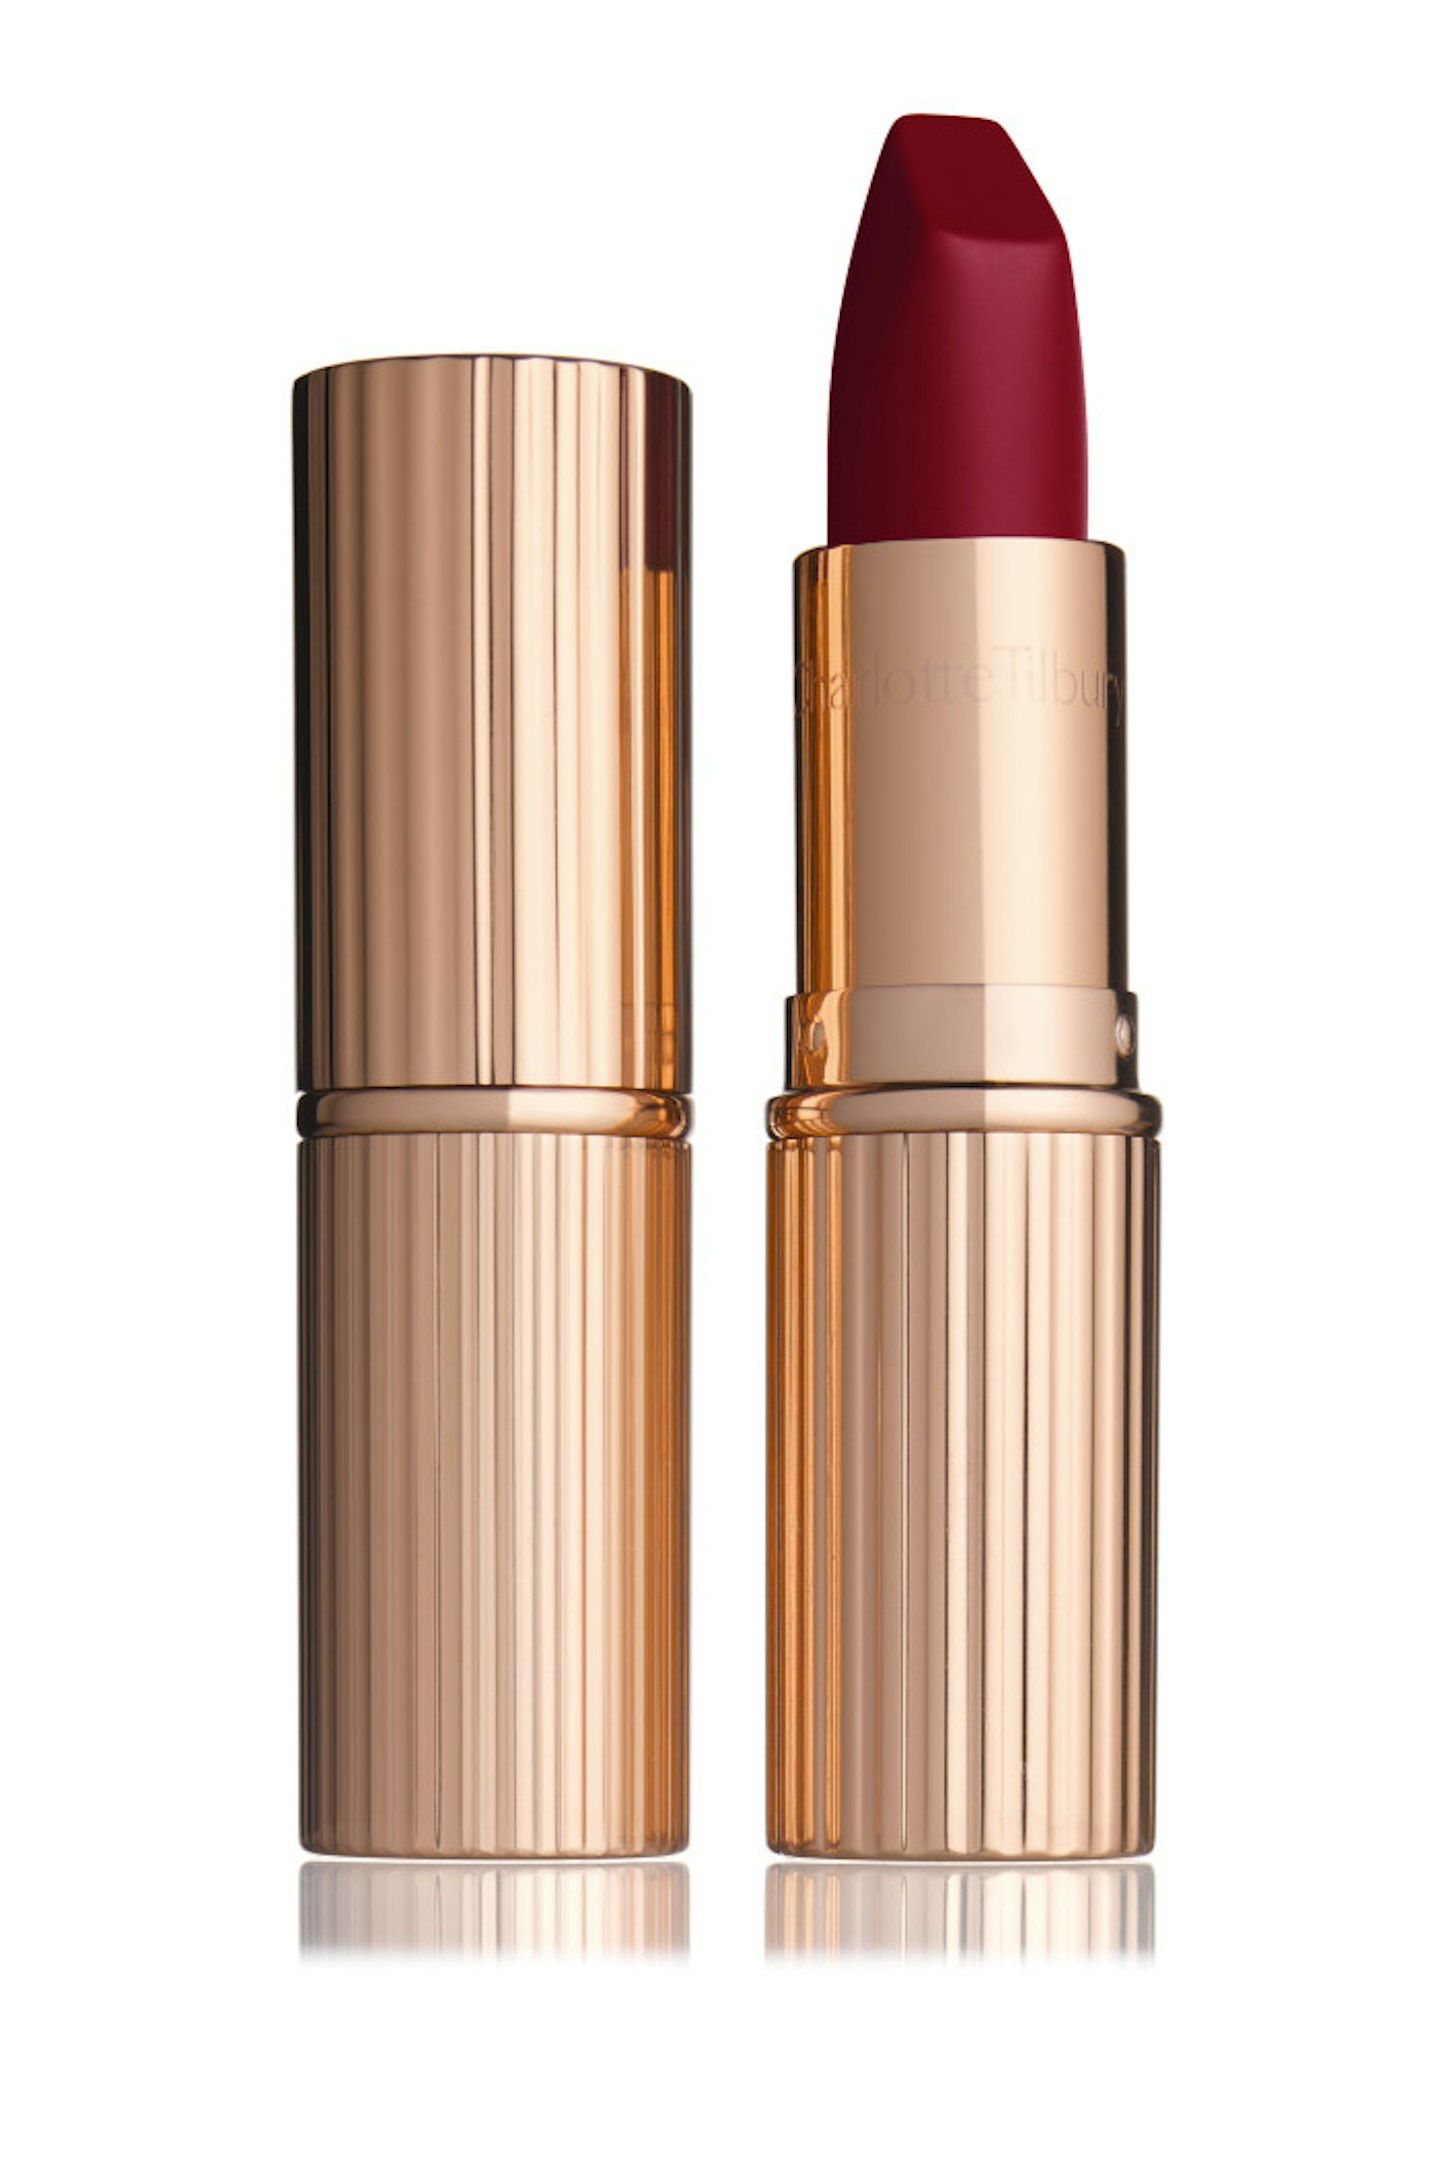 Charlotte Tilbury Matte Revolution Lipstick in Red Carpet Red, £23.00